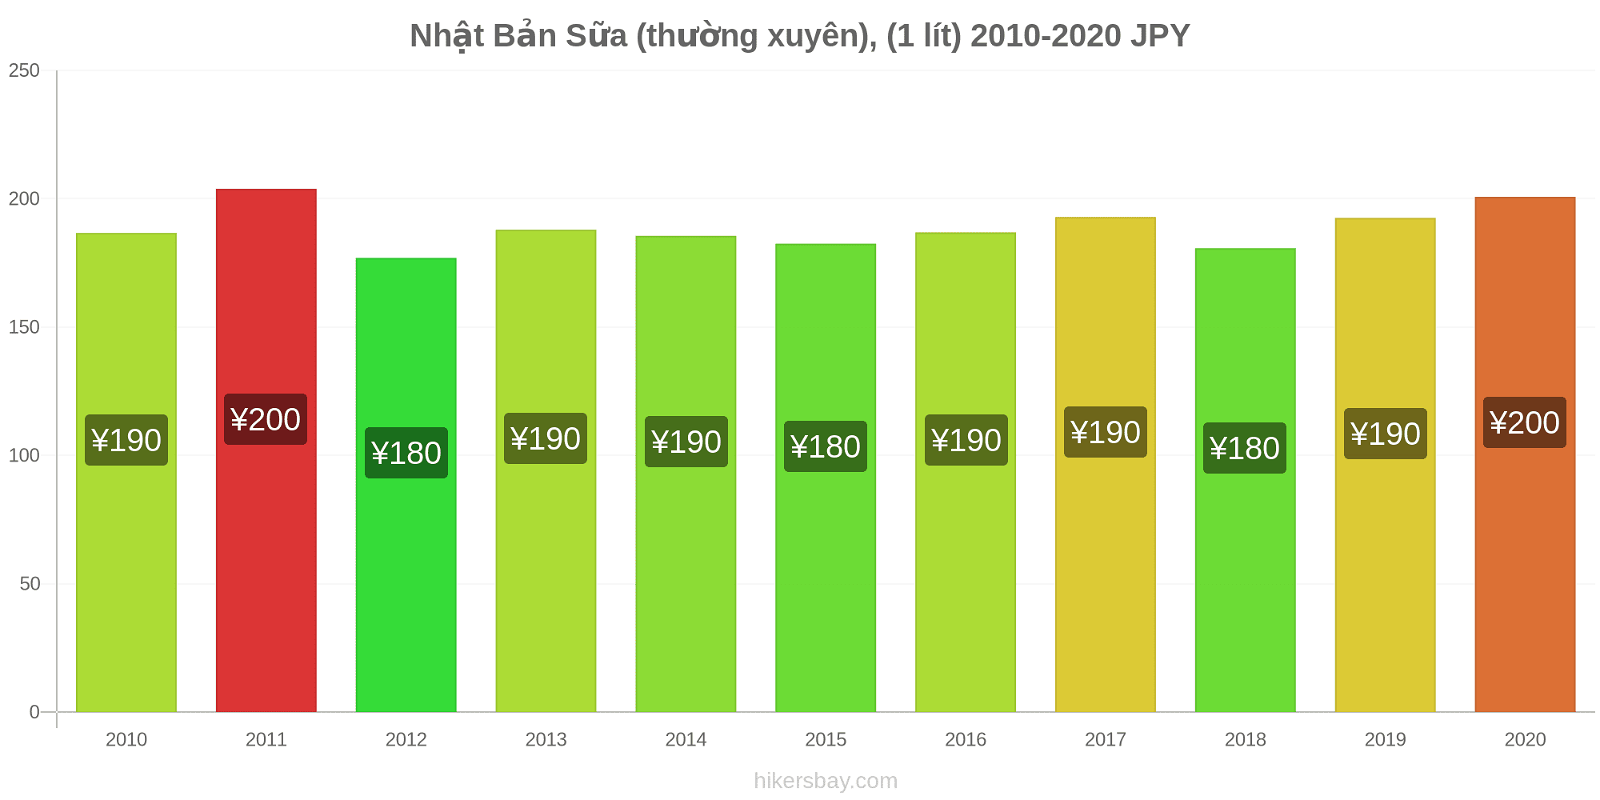 Nhật Bản thay đổi giá Sữa (thường xuyên), (1 lít) hikersbay.com